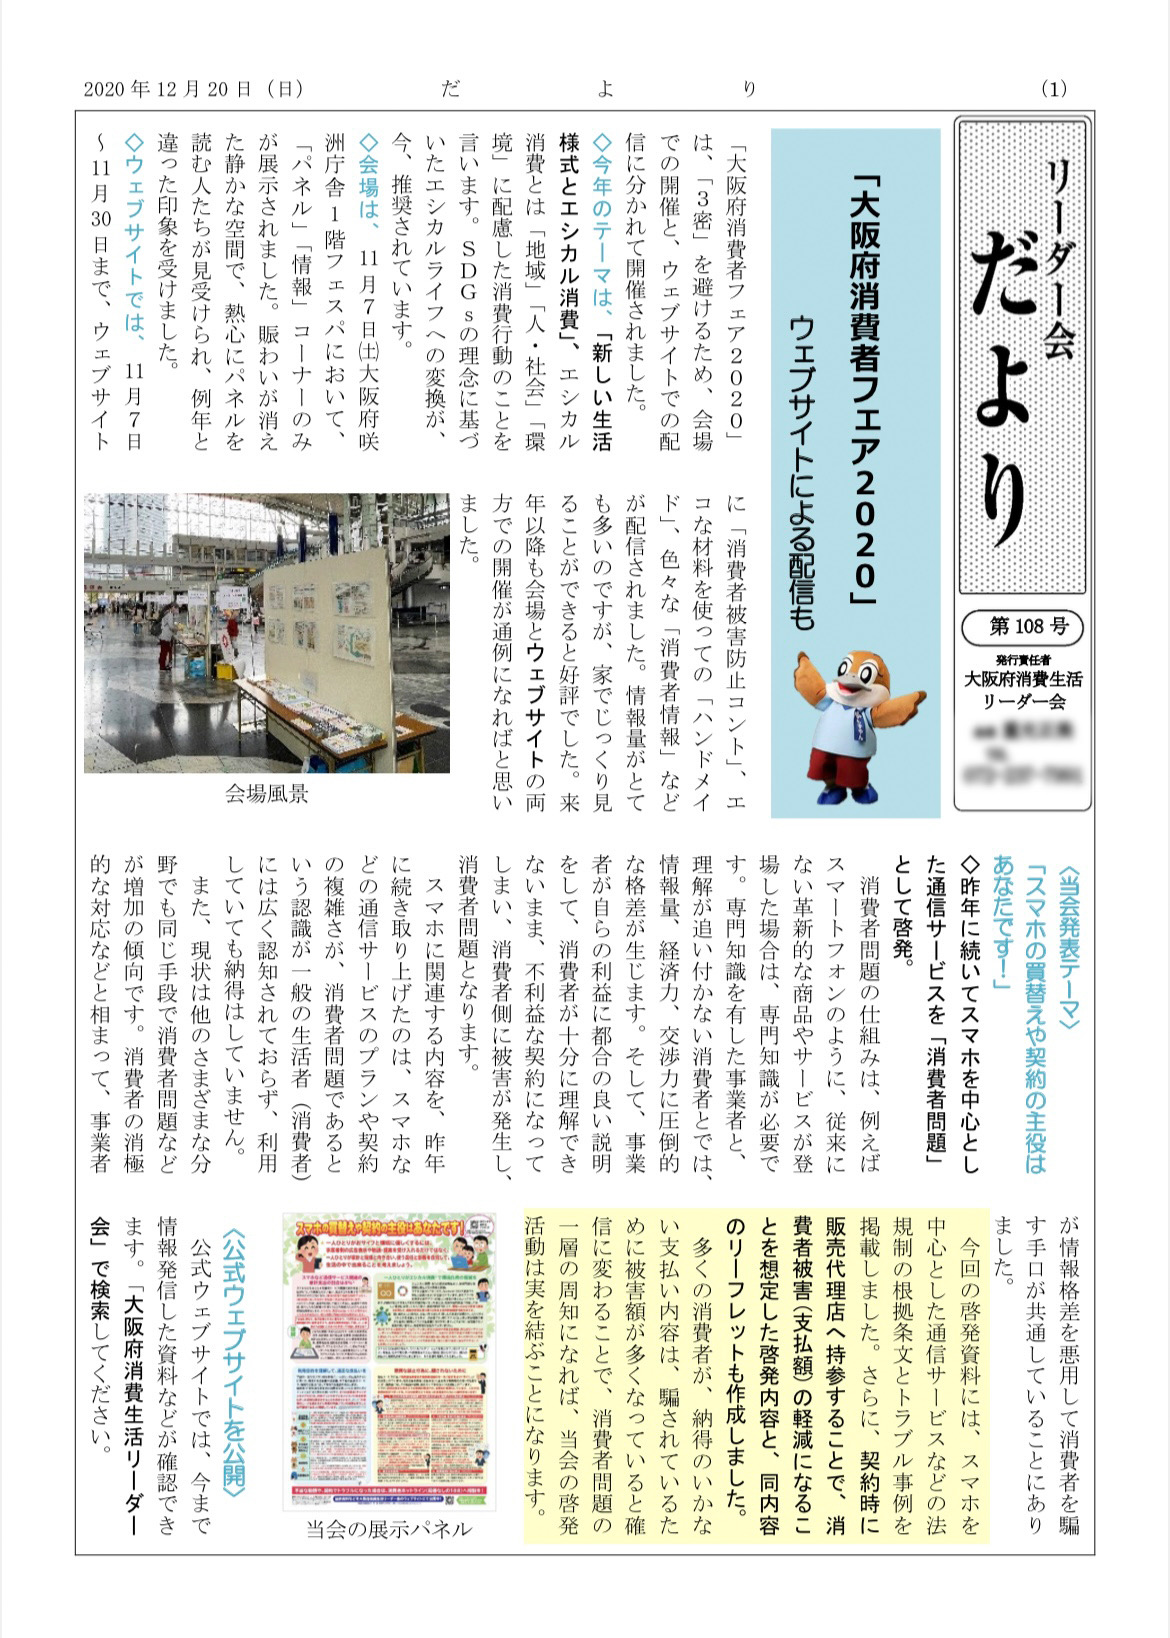 令和2年12月20日に、大阪府消費生活リーダー会の会員や消費者団体や消費者行政向けの会報紙「だより」108号を発行